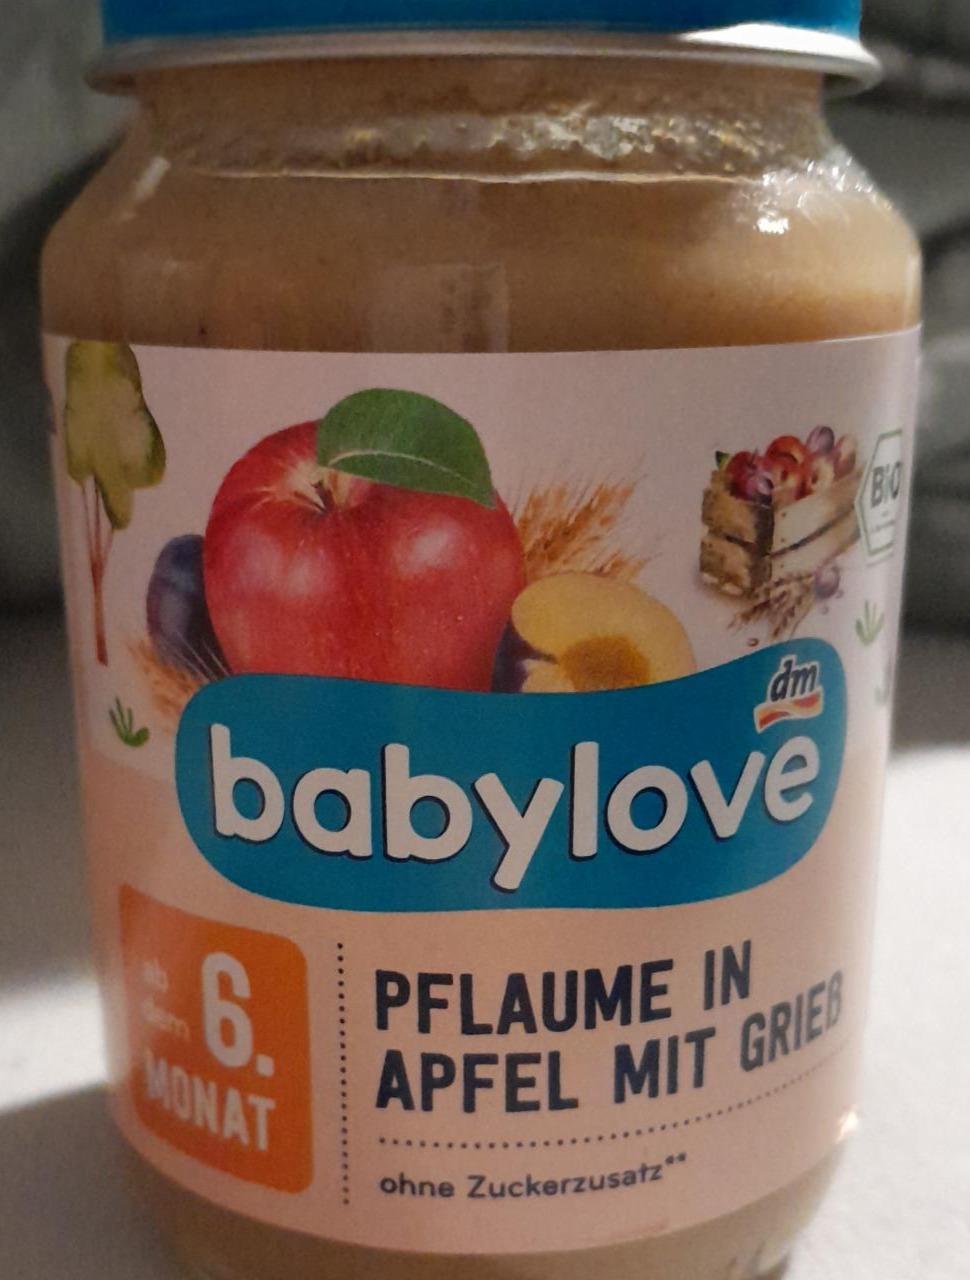 Fotografie - Pflaume in Apfel mit Grieß Babylove